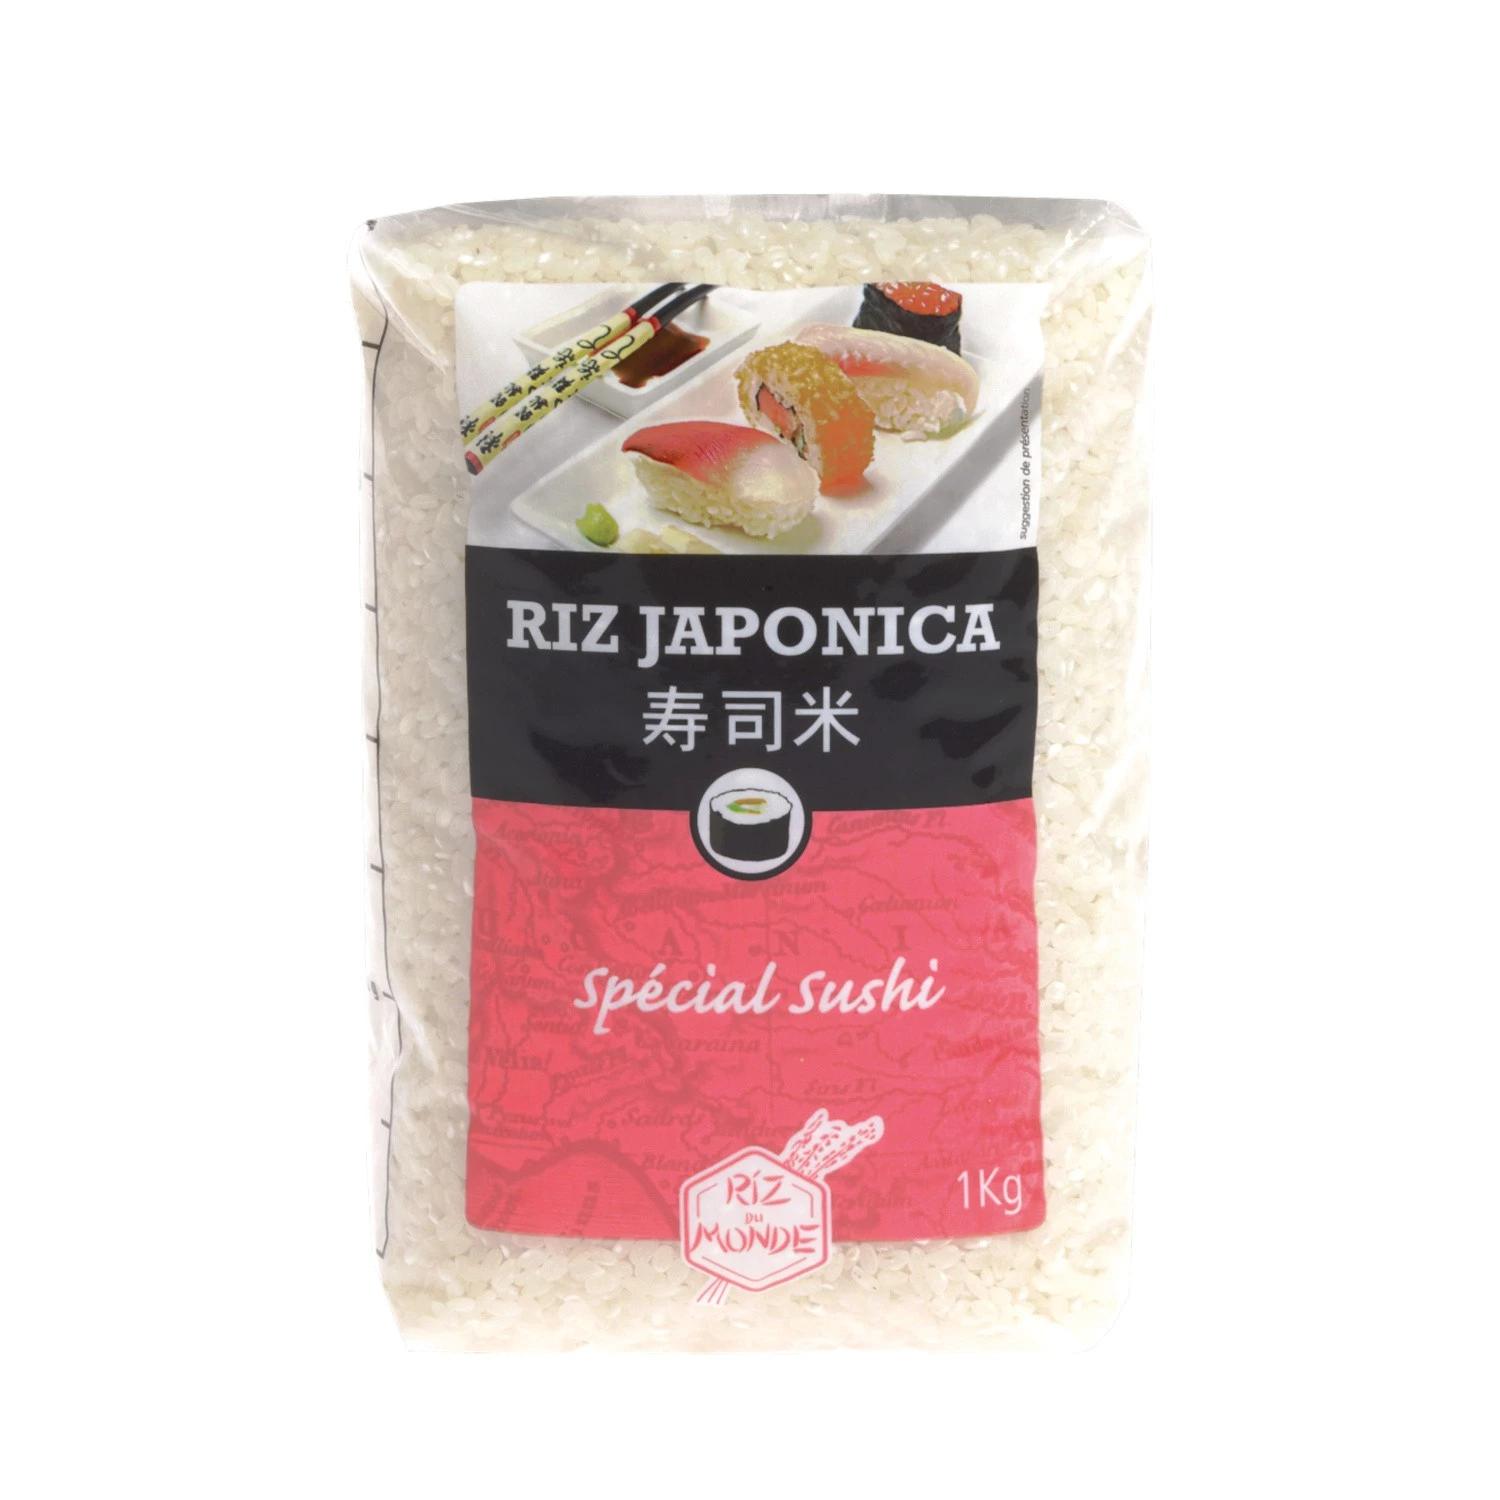 お米 特選寿司ジャポニカ 1kg - RICE OF THE WORLD